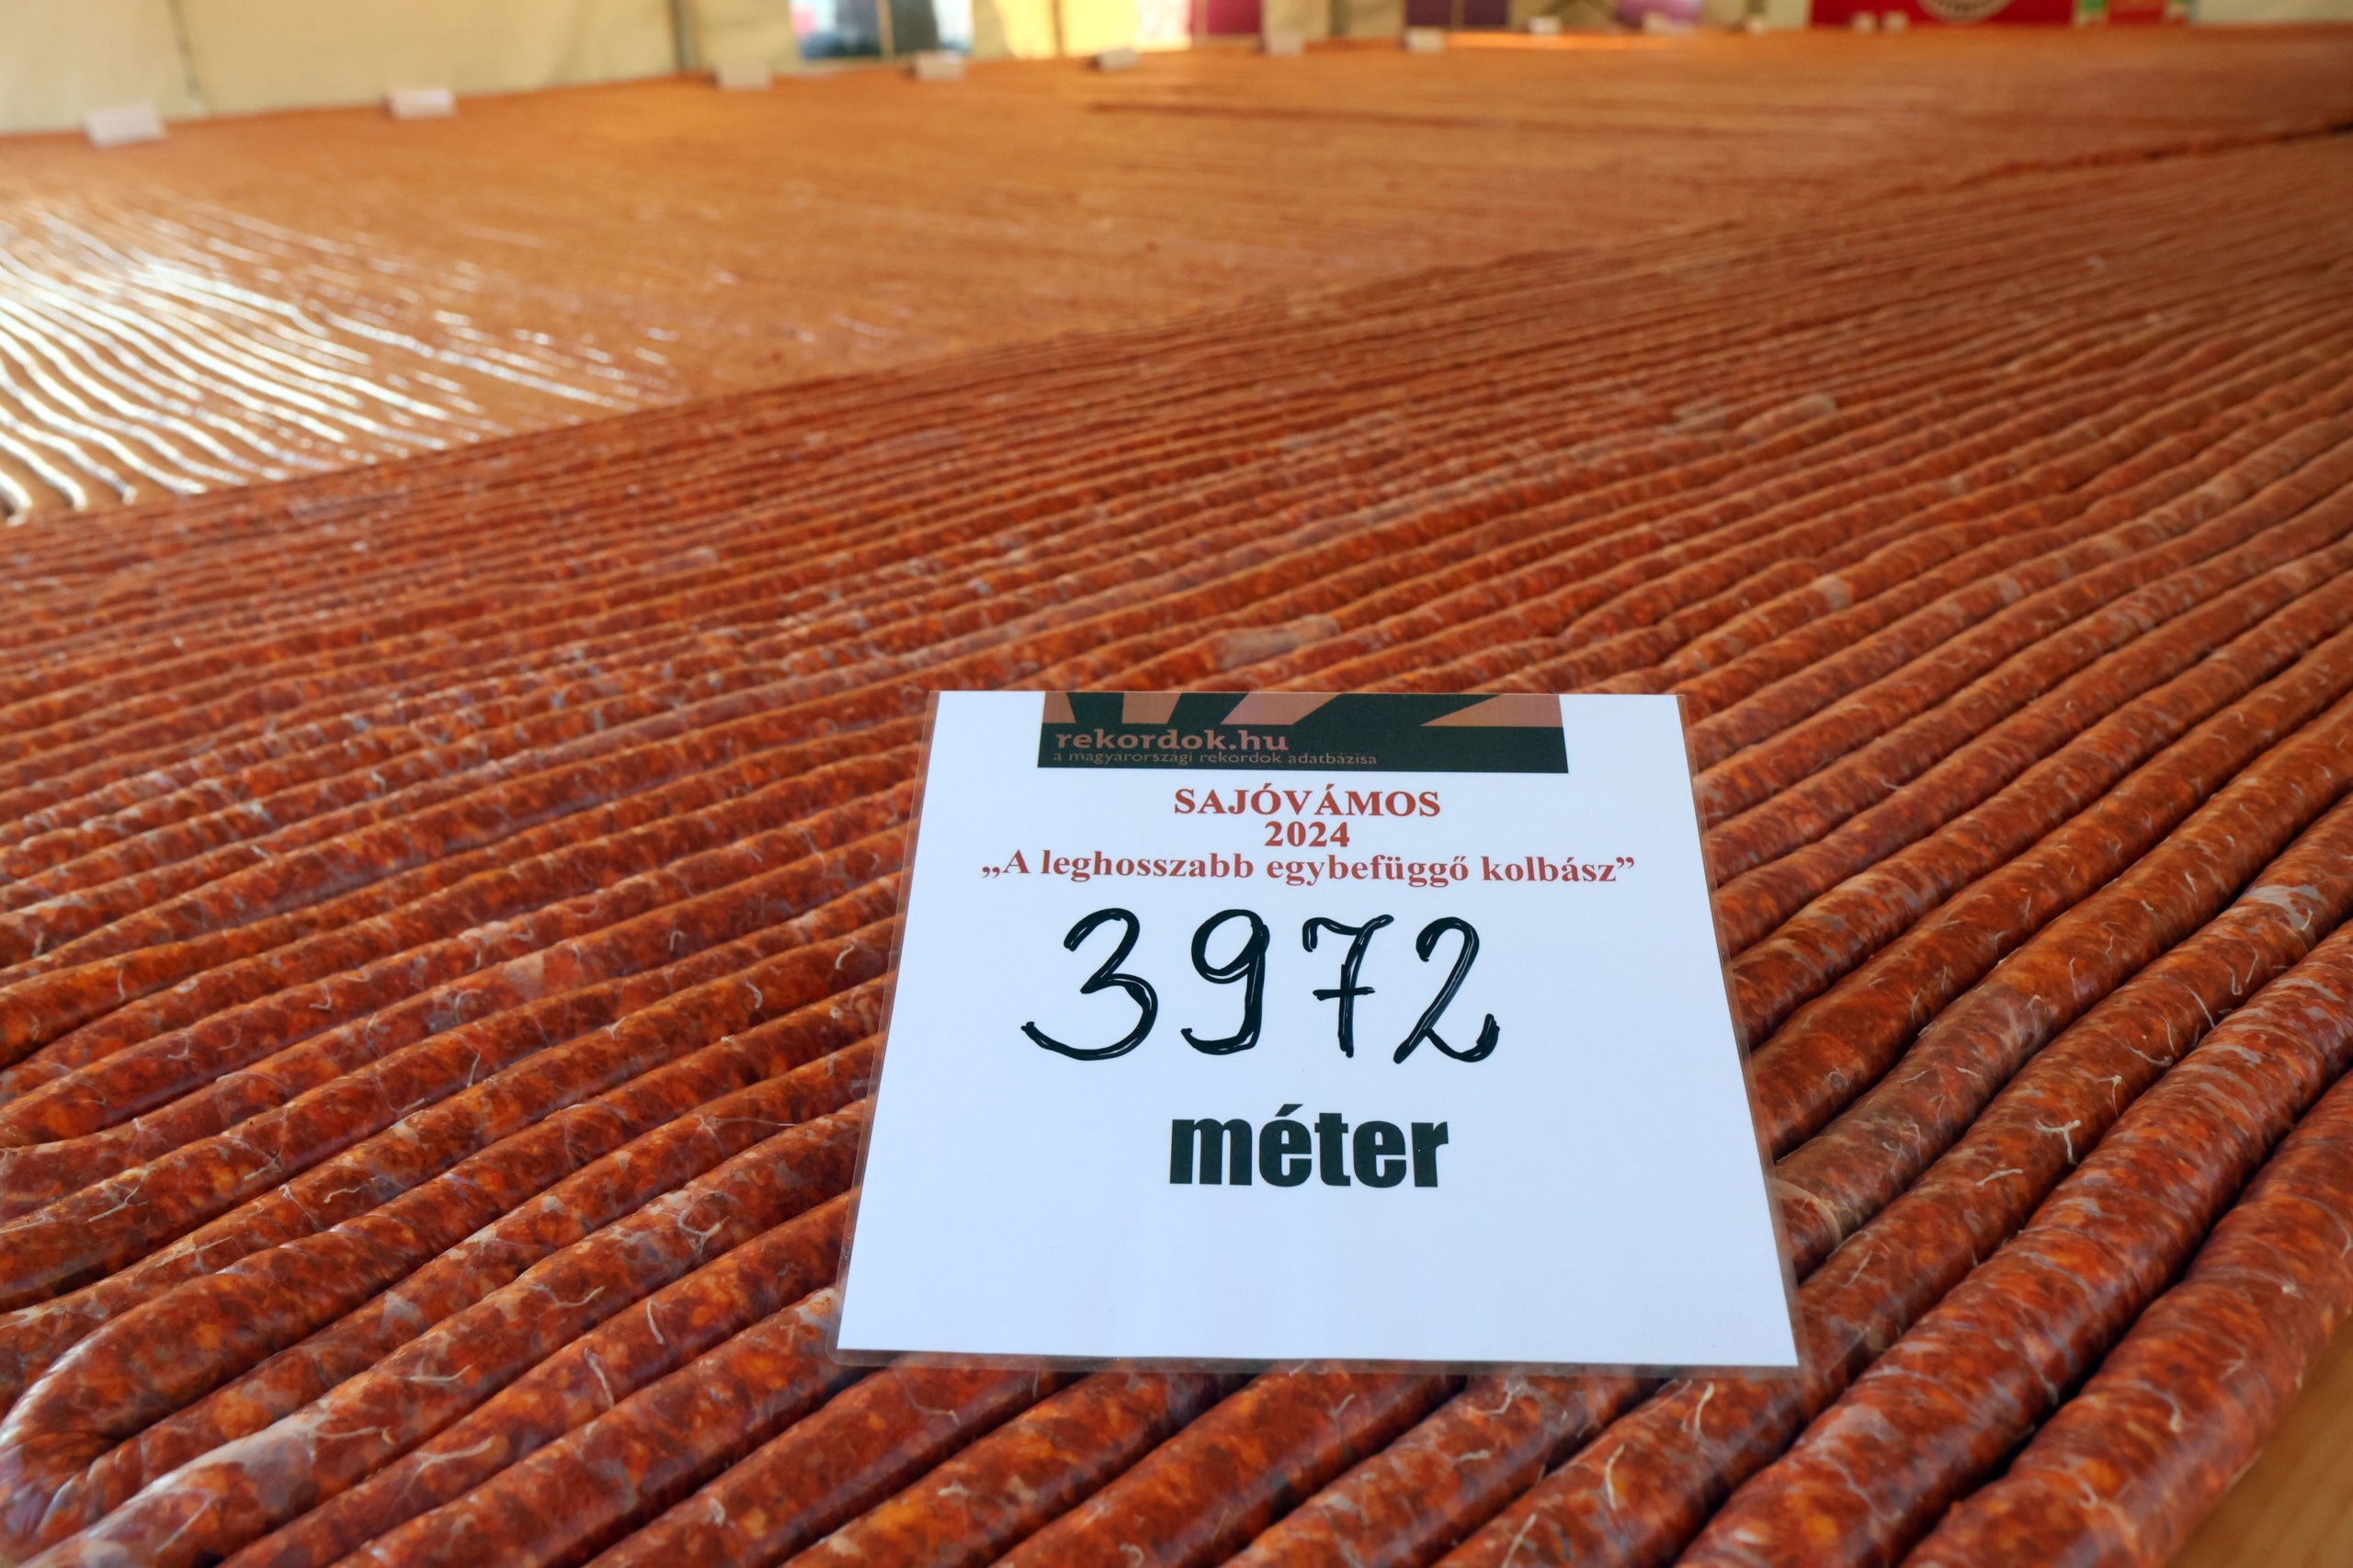 Rekordhosszúságú, 3972 méteres kolbászt készítettek Sajóvámoson